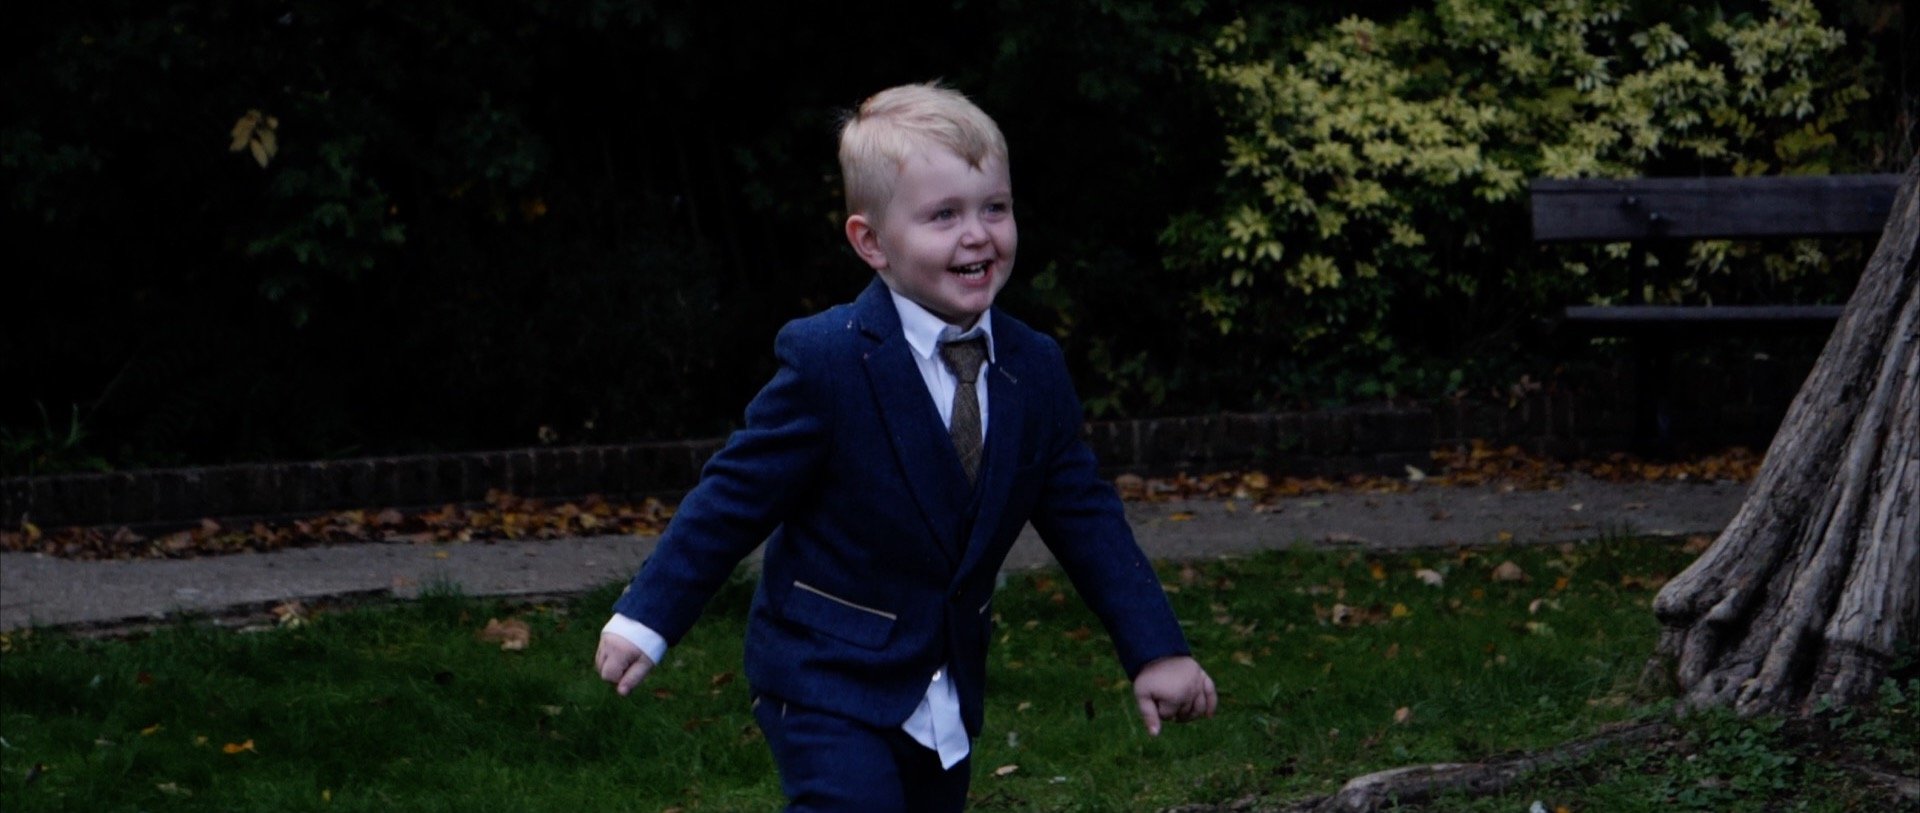 Little boy running at wedding in Essex.jpg